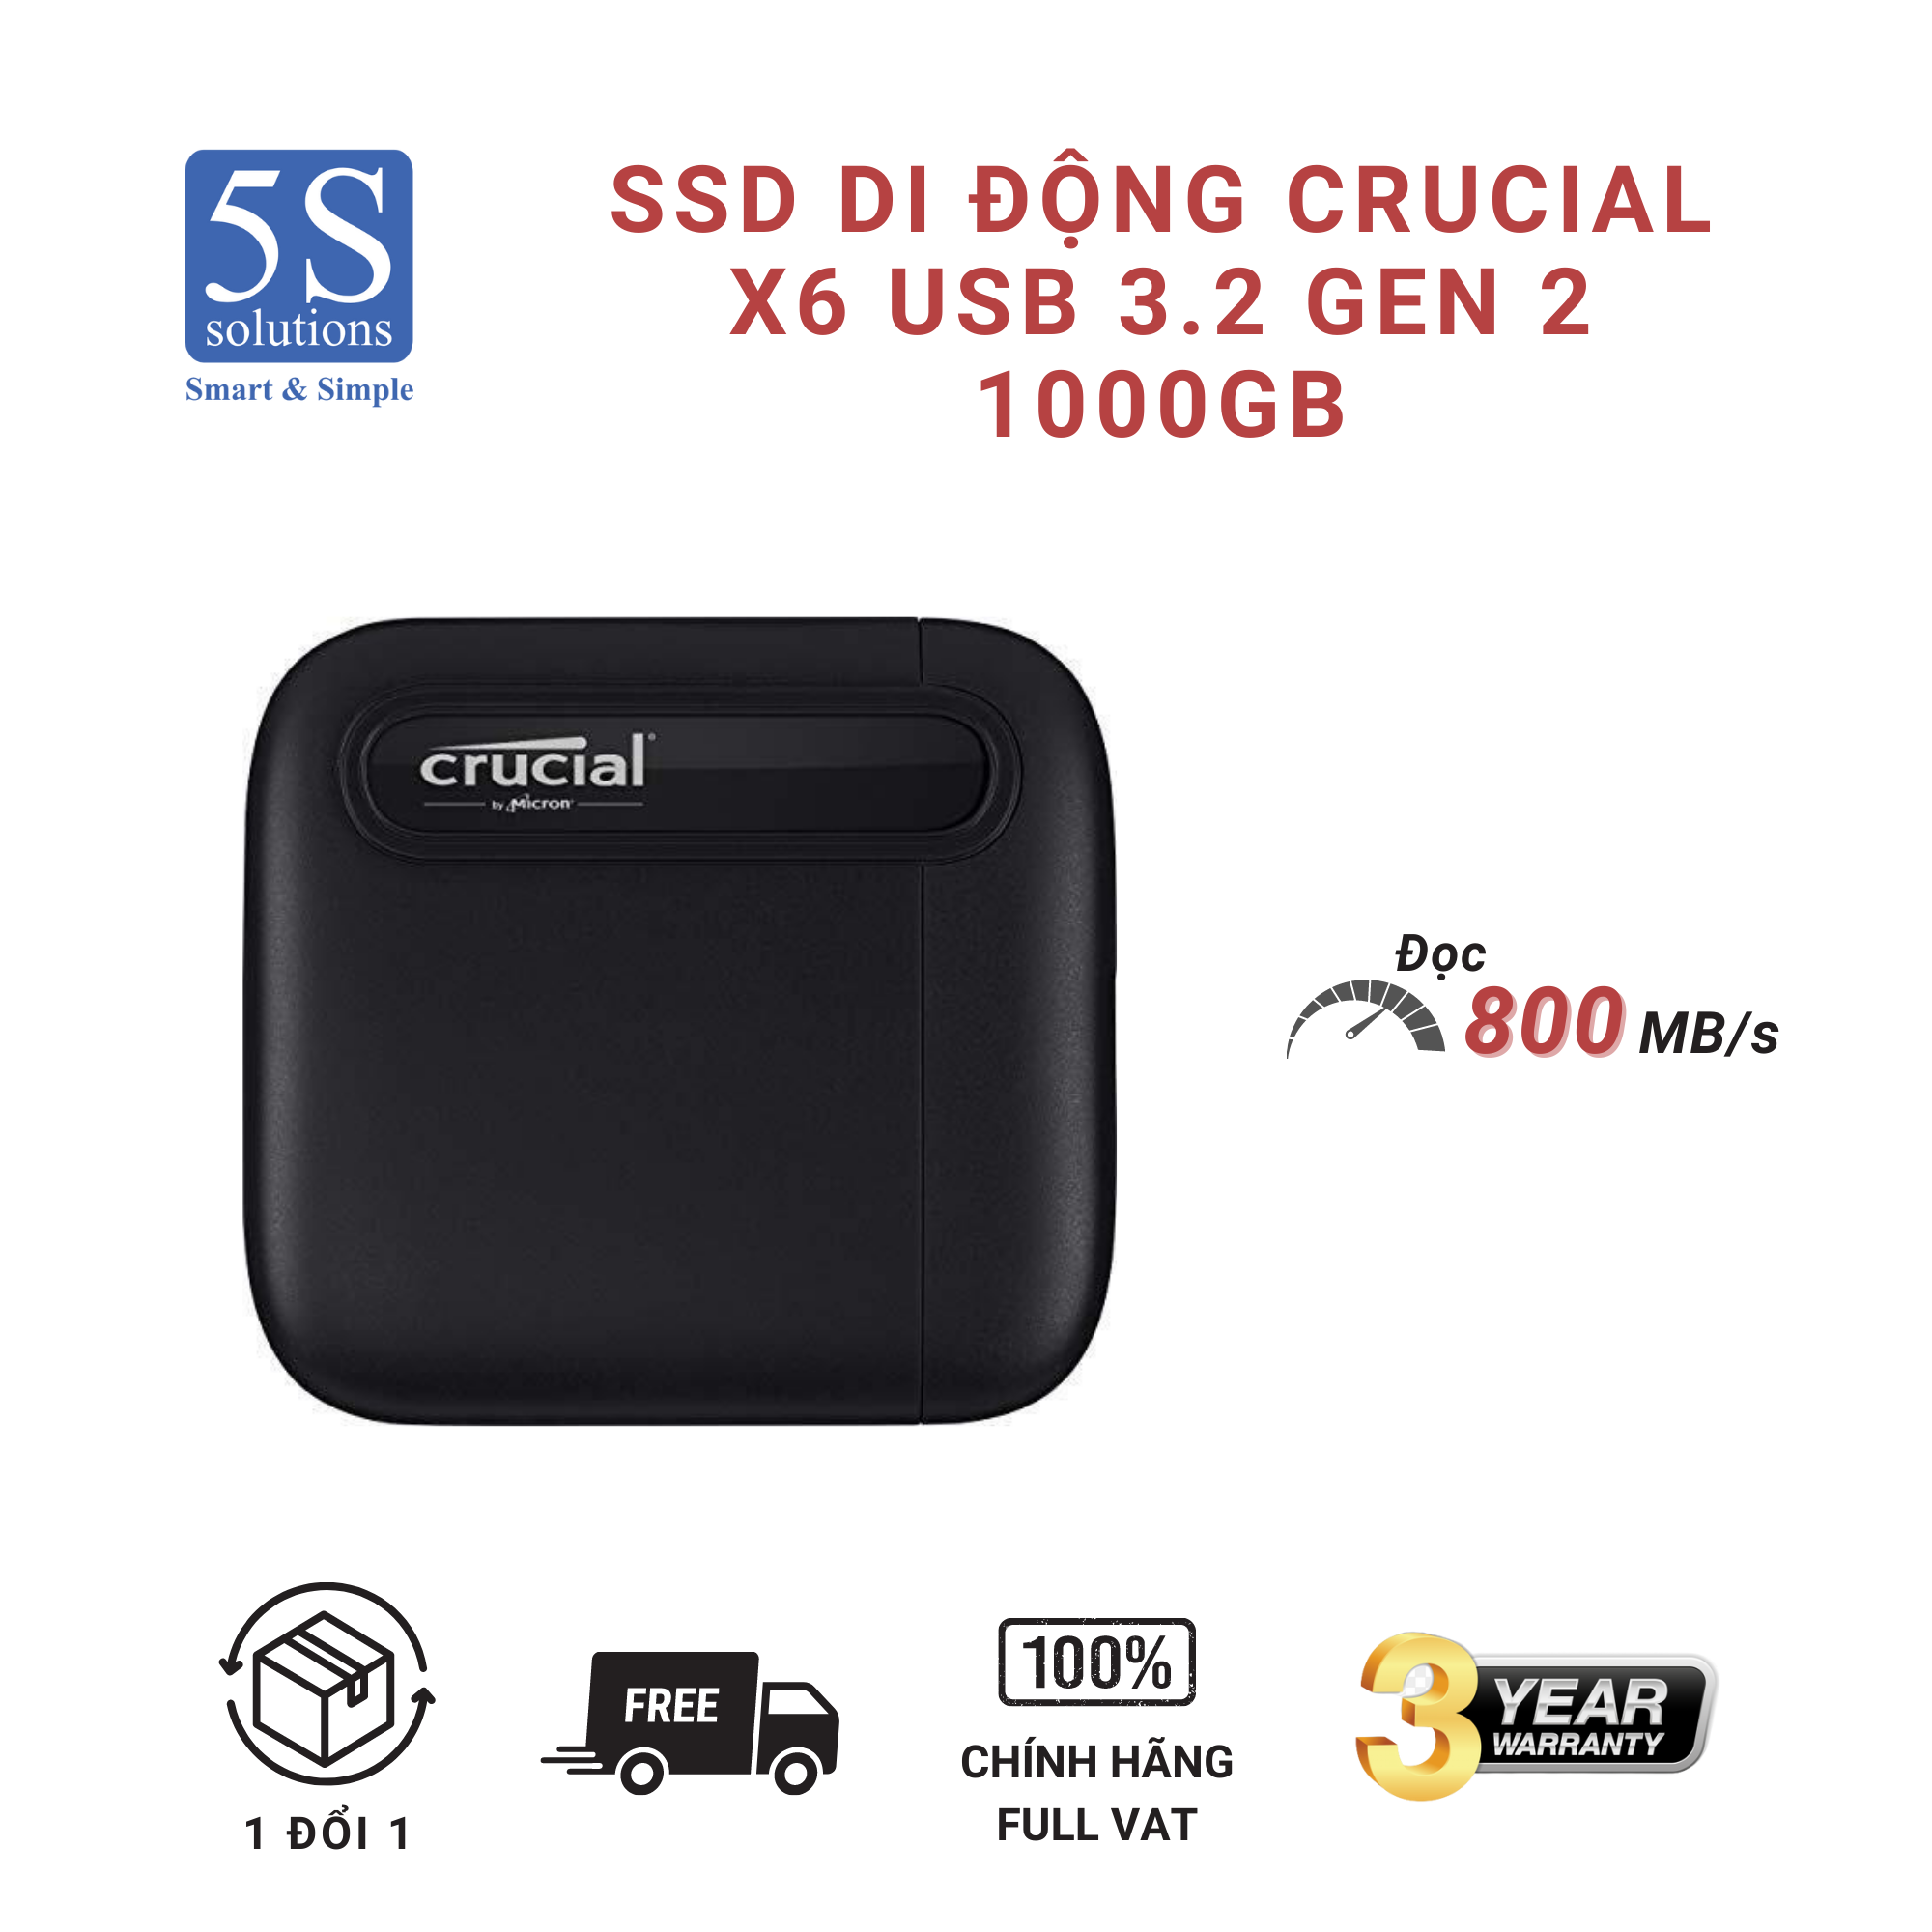 Ổ cứng di động 1000GB External SSD Crucial X6 USB 3.2 Gen 2 Type